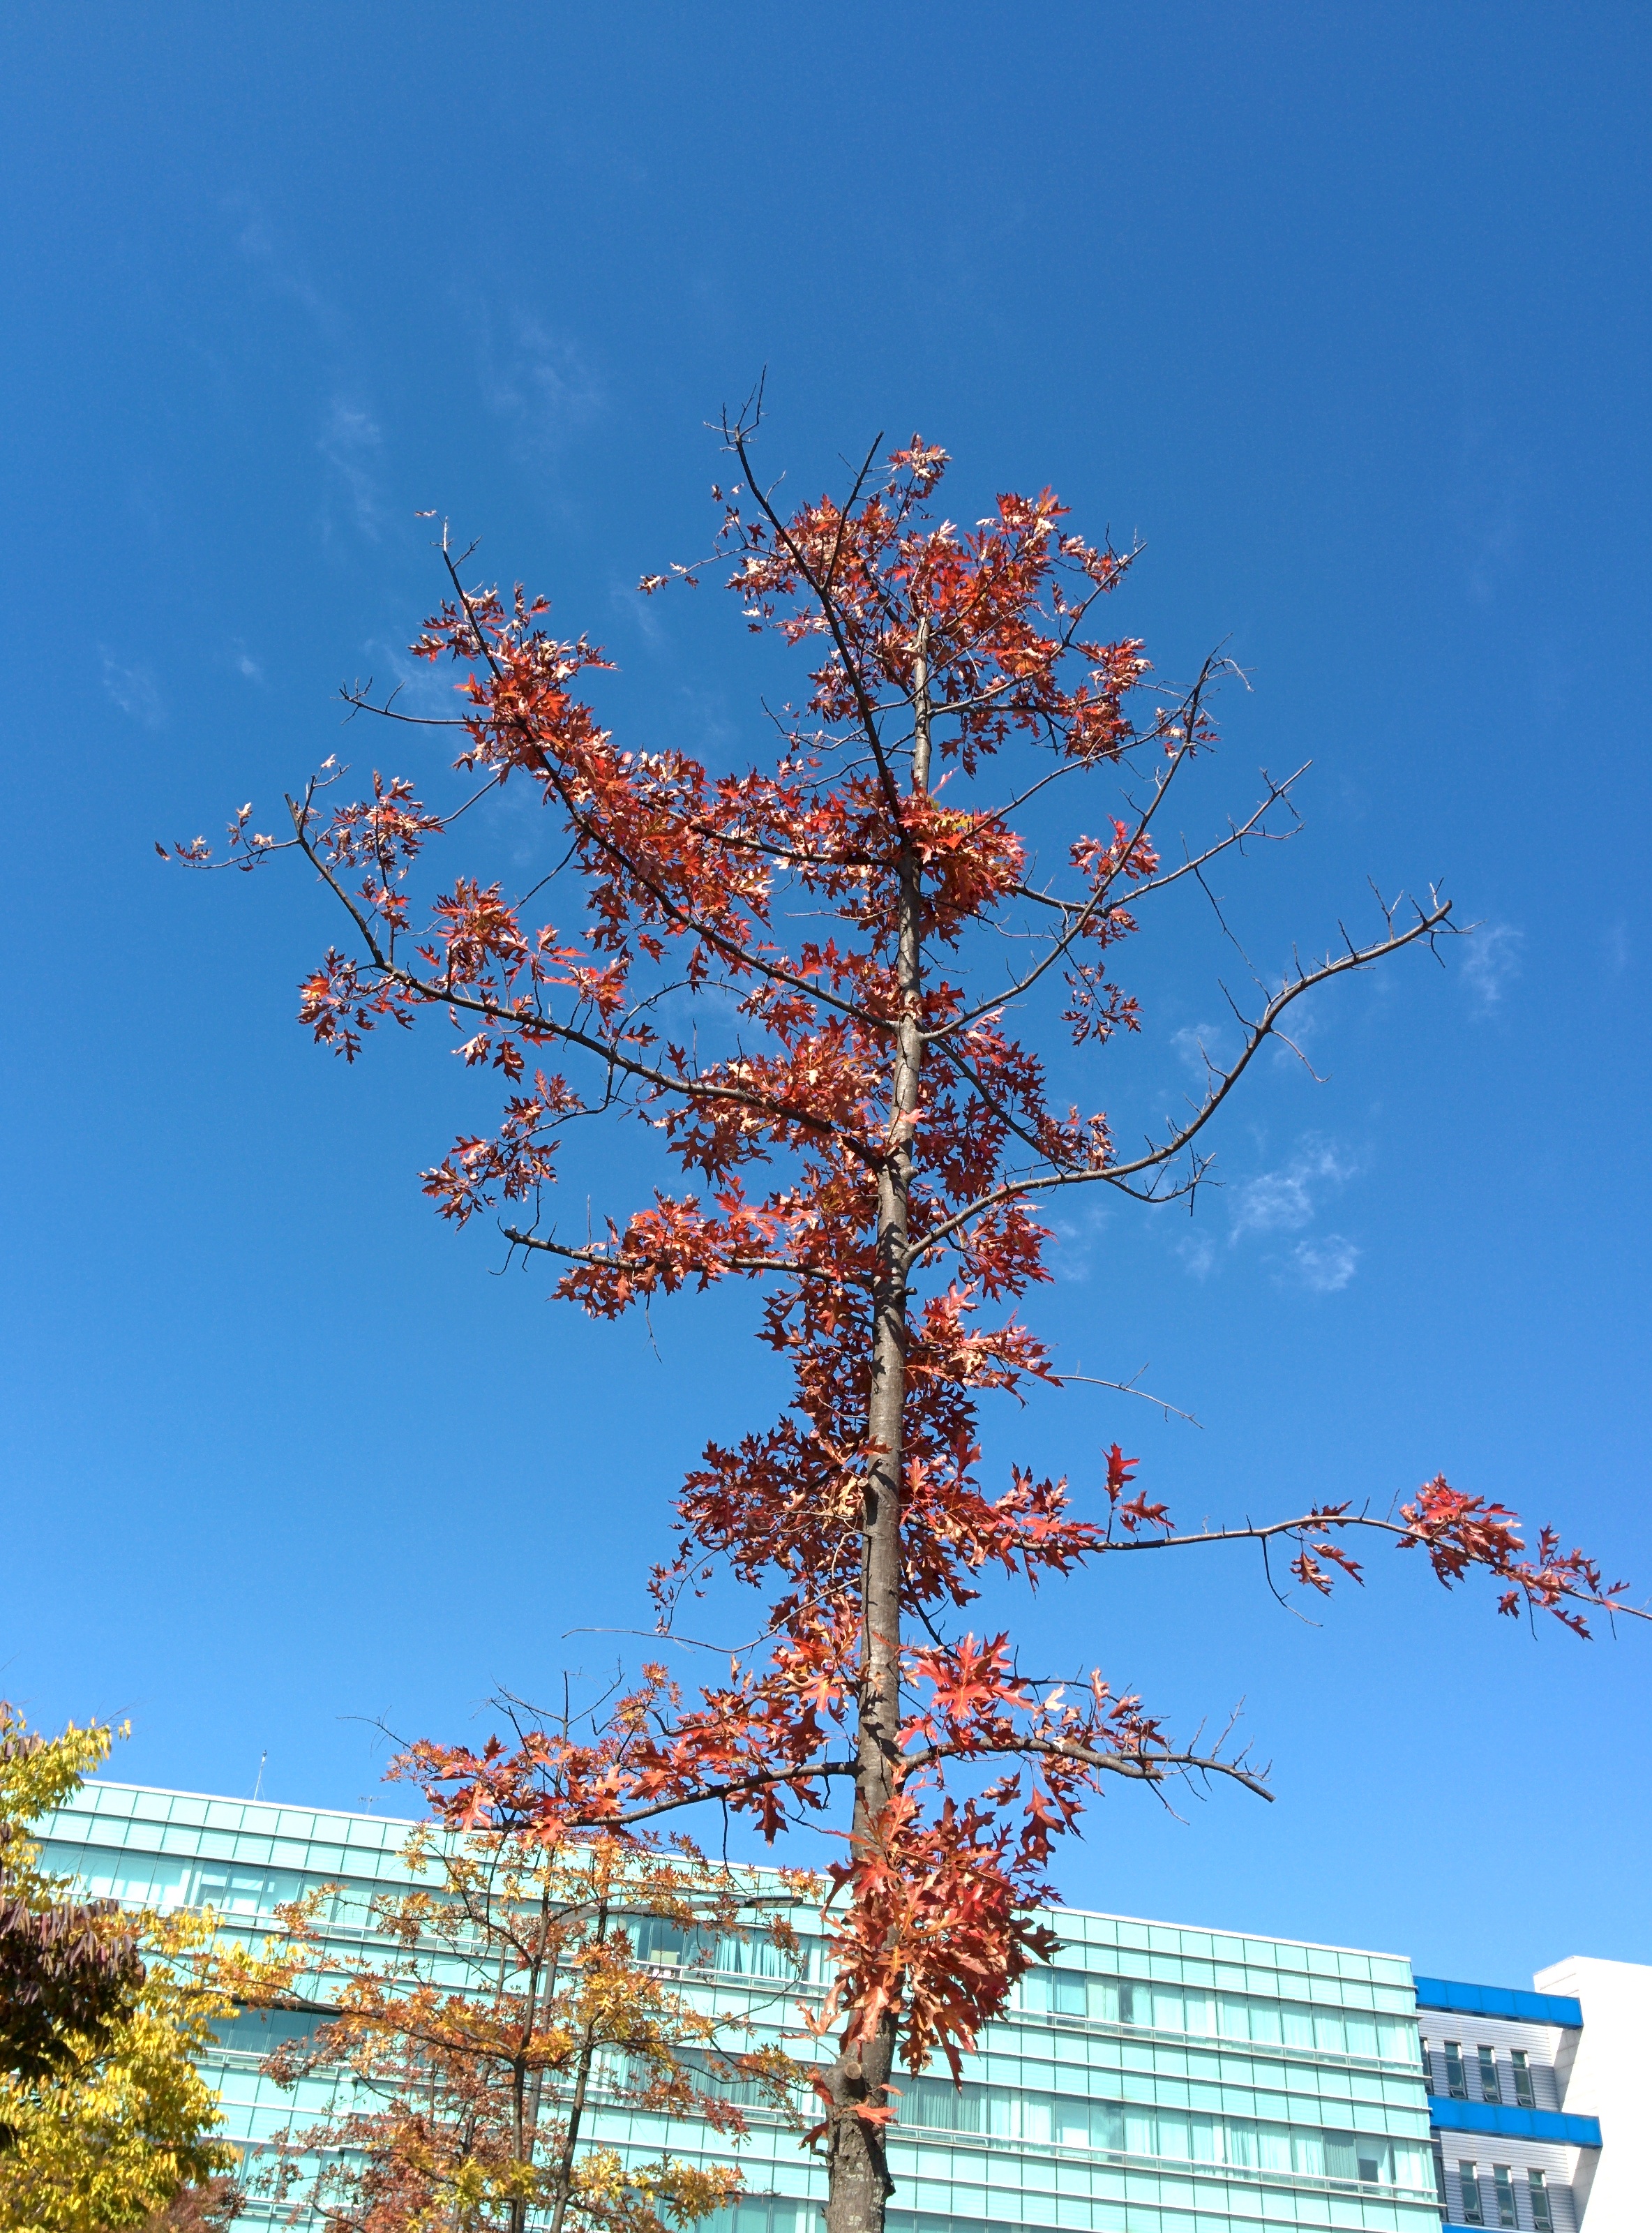 IMG_20151026_121610.jpg 붉게 단풍이 든 가로수의 큰 톱니 이파리 -- 대왕참나무